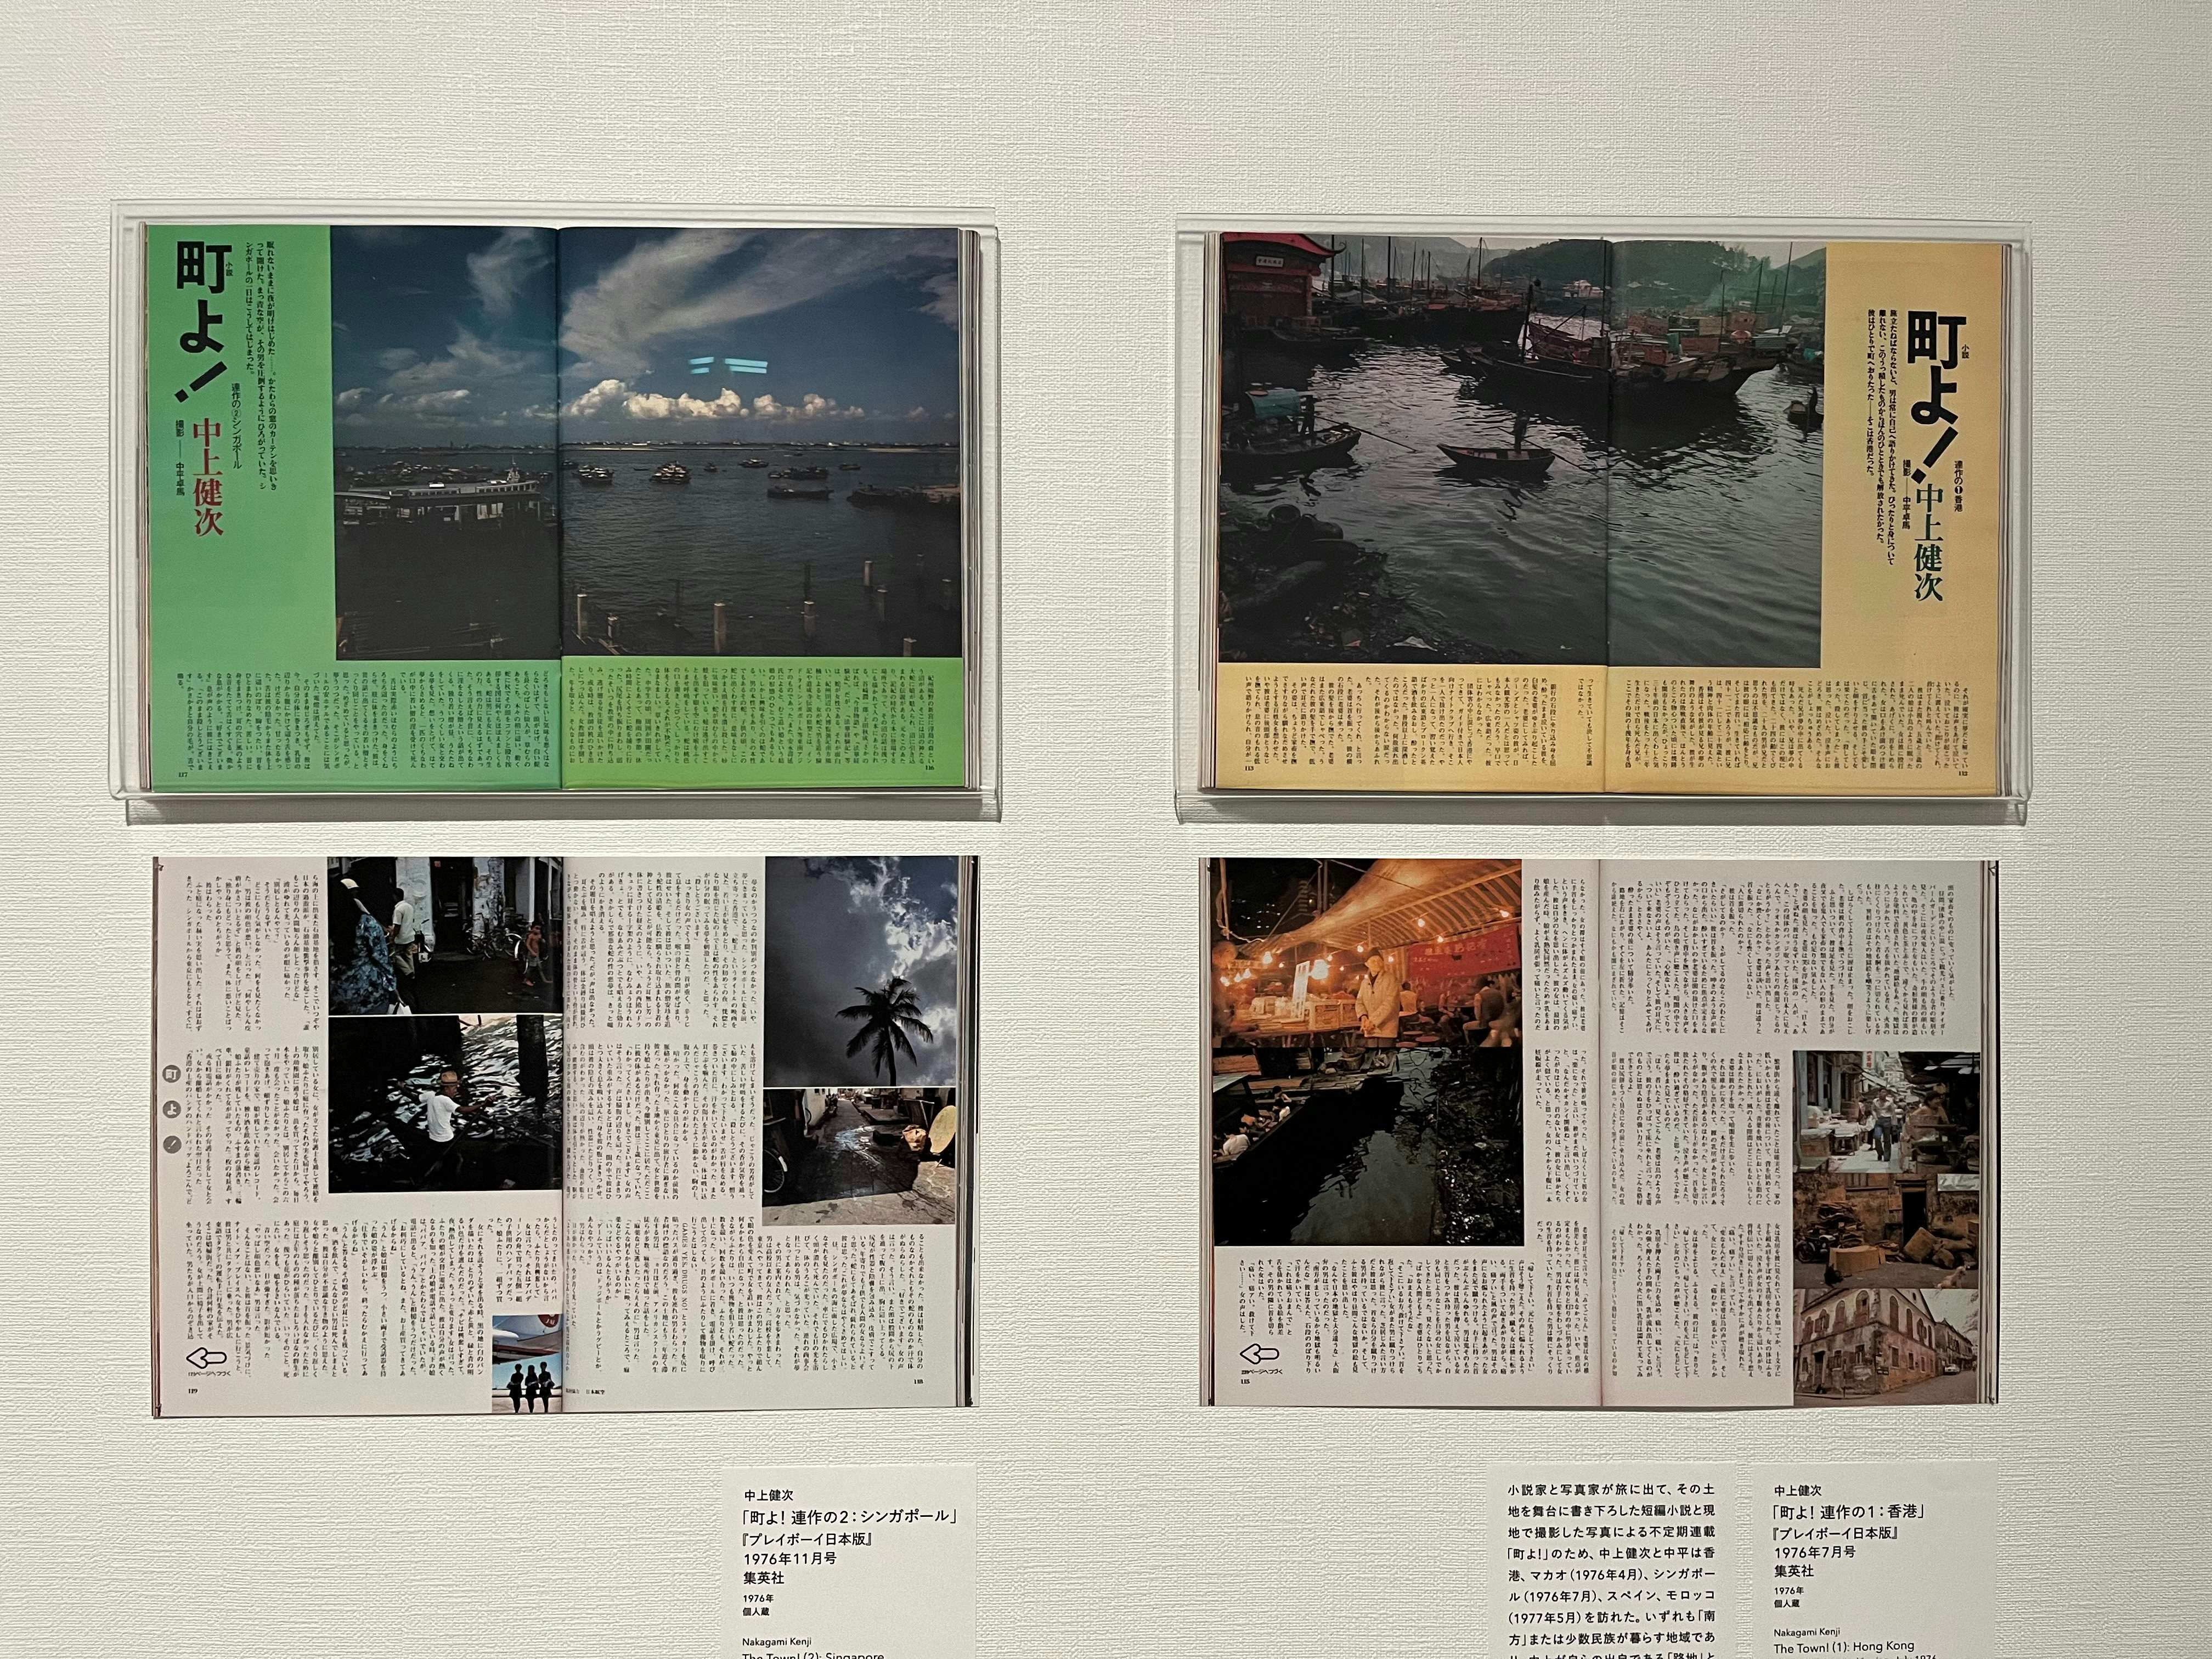 中平卓馬 火―氾濫」を東京国立近代美術館で見る。写真、メディア、その 